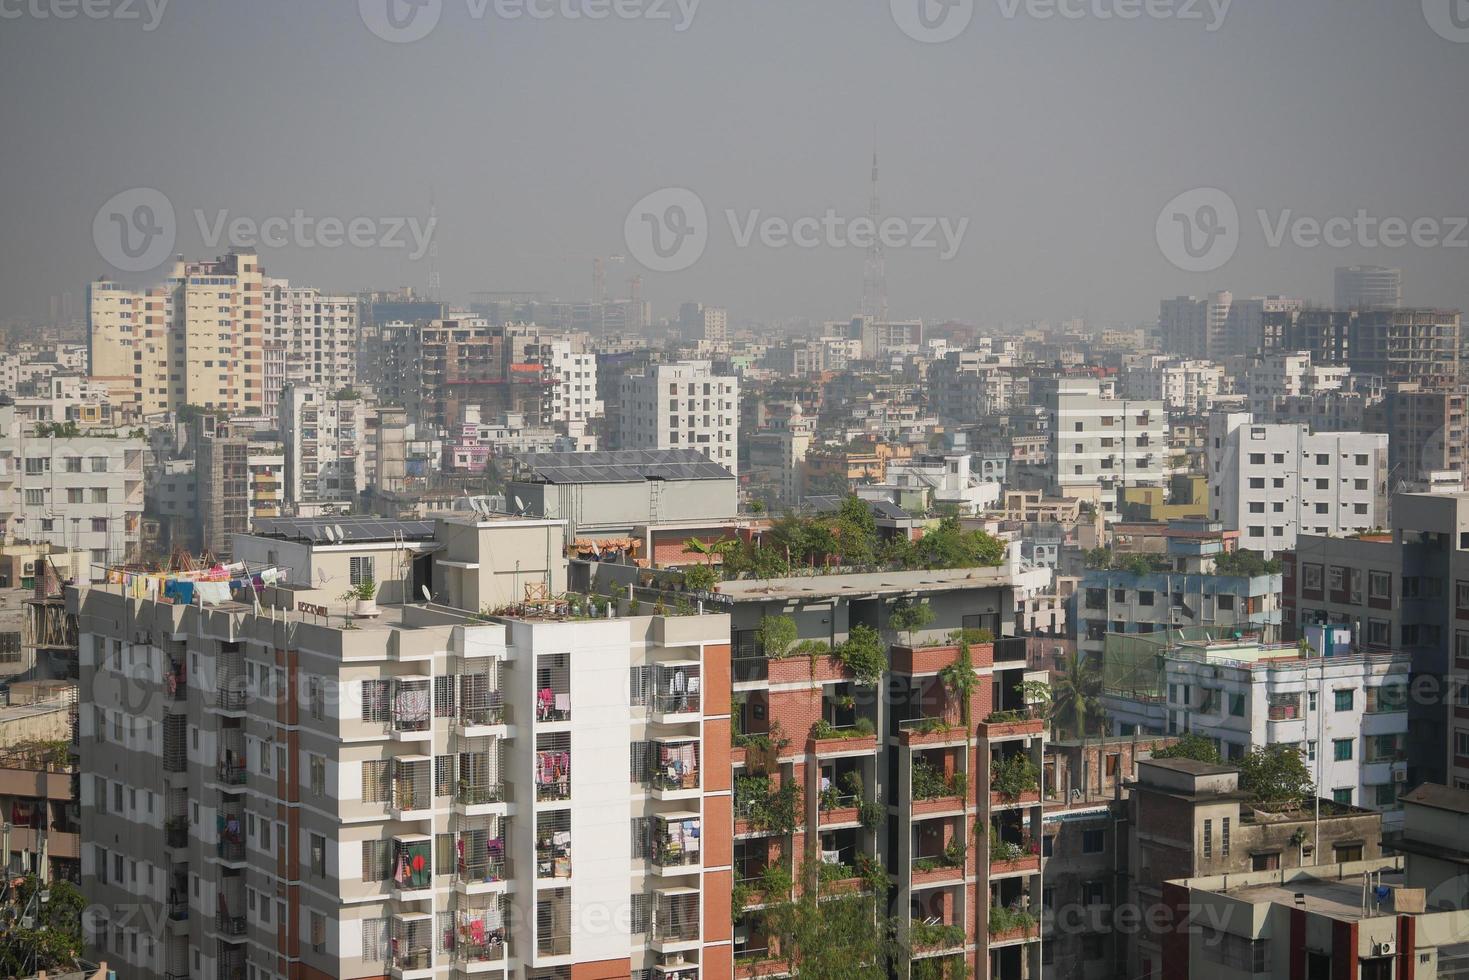 edifícios da cidade de dhaka em dia ensolarado foto